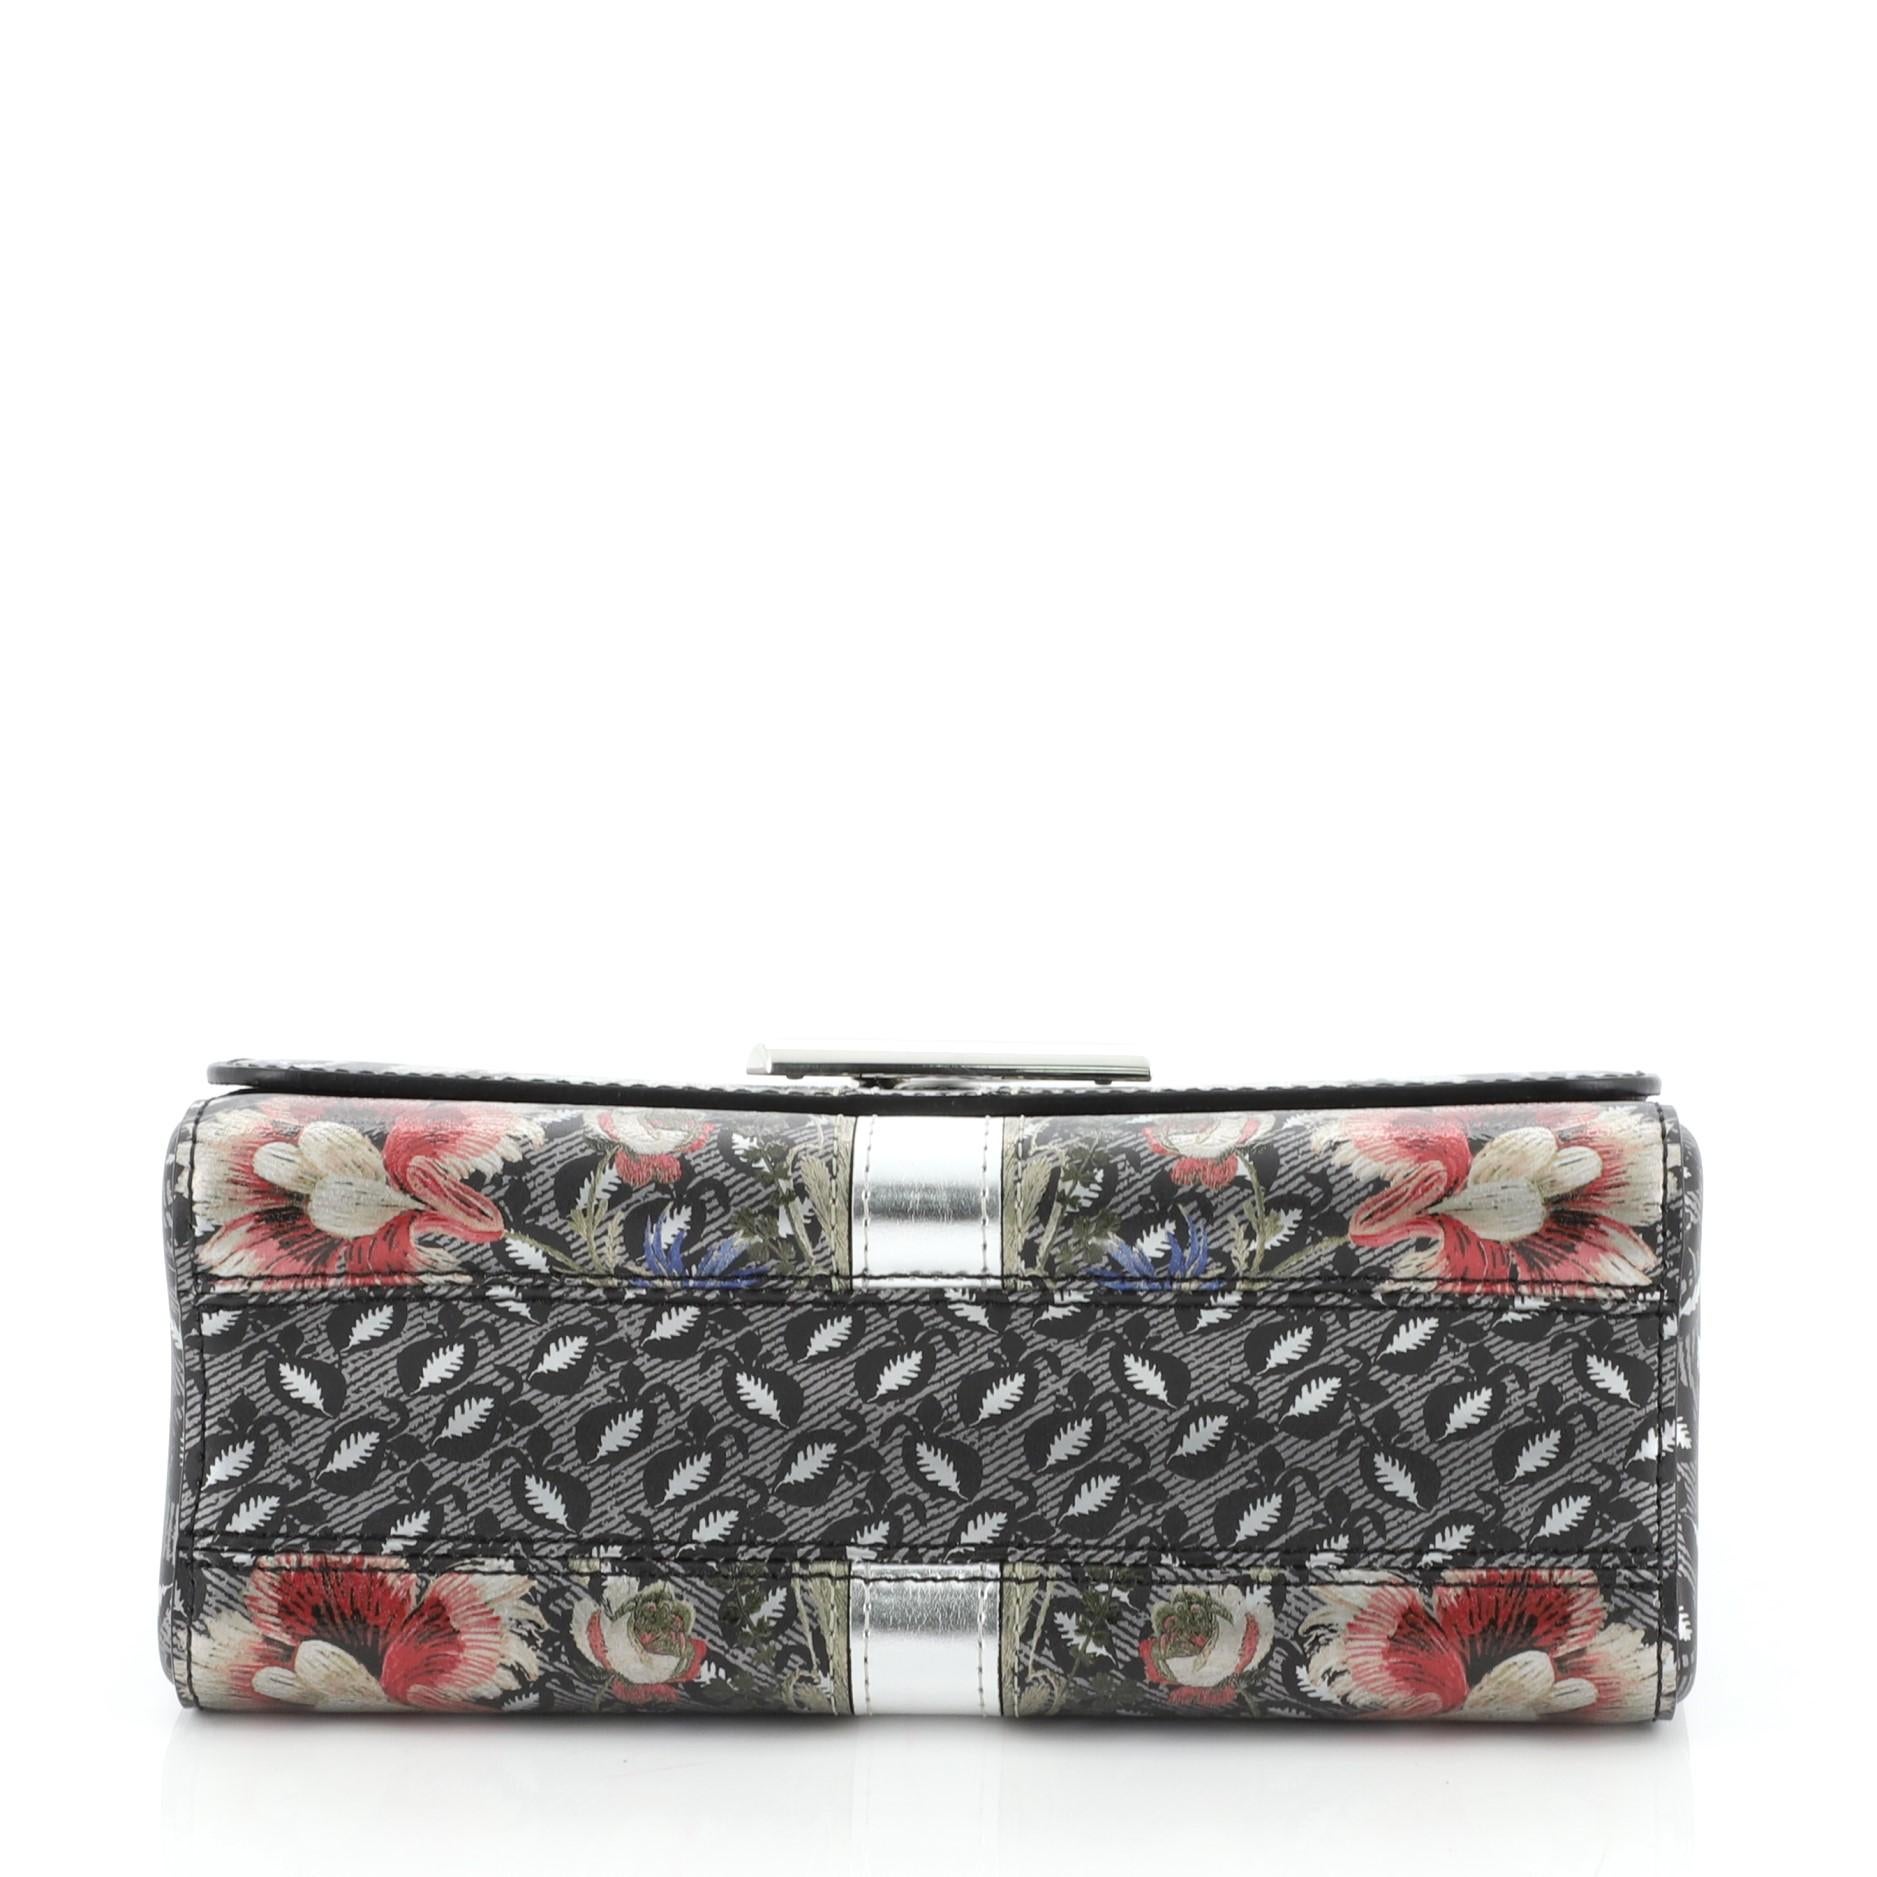 Women's or Men's Louis Vuitton Twist Handbag Limited Edition Floral Print Epi Leather MM 